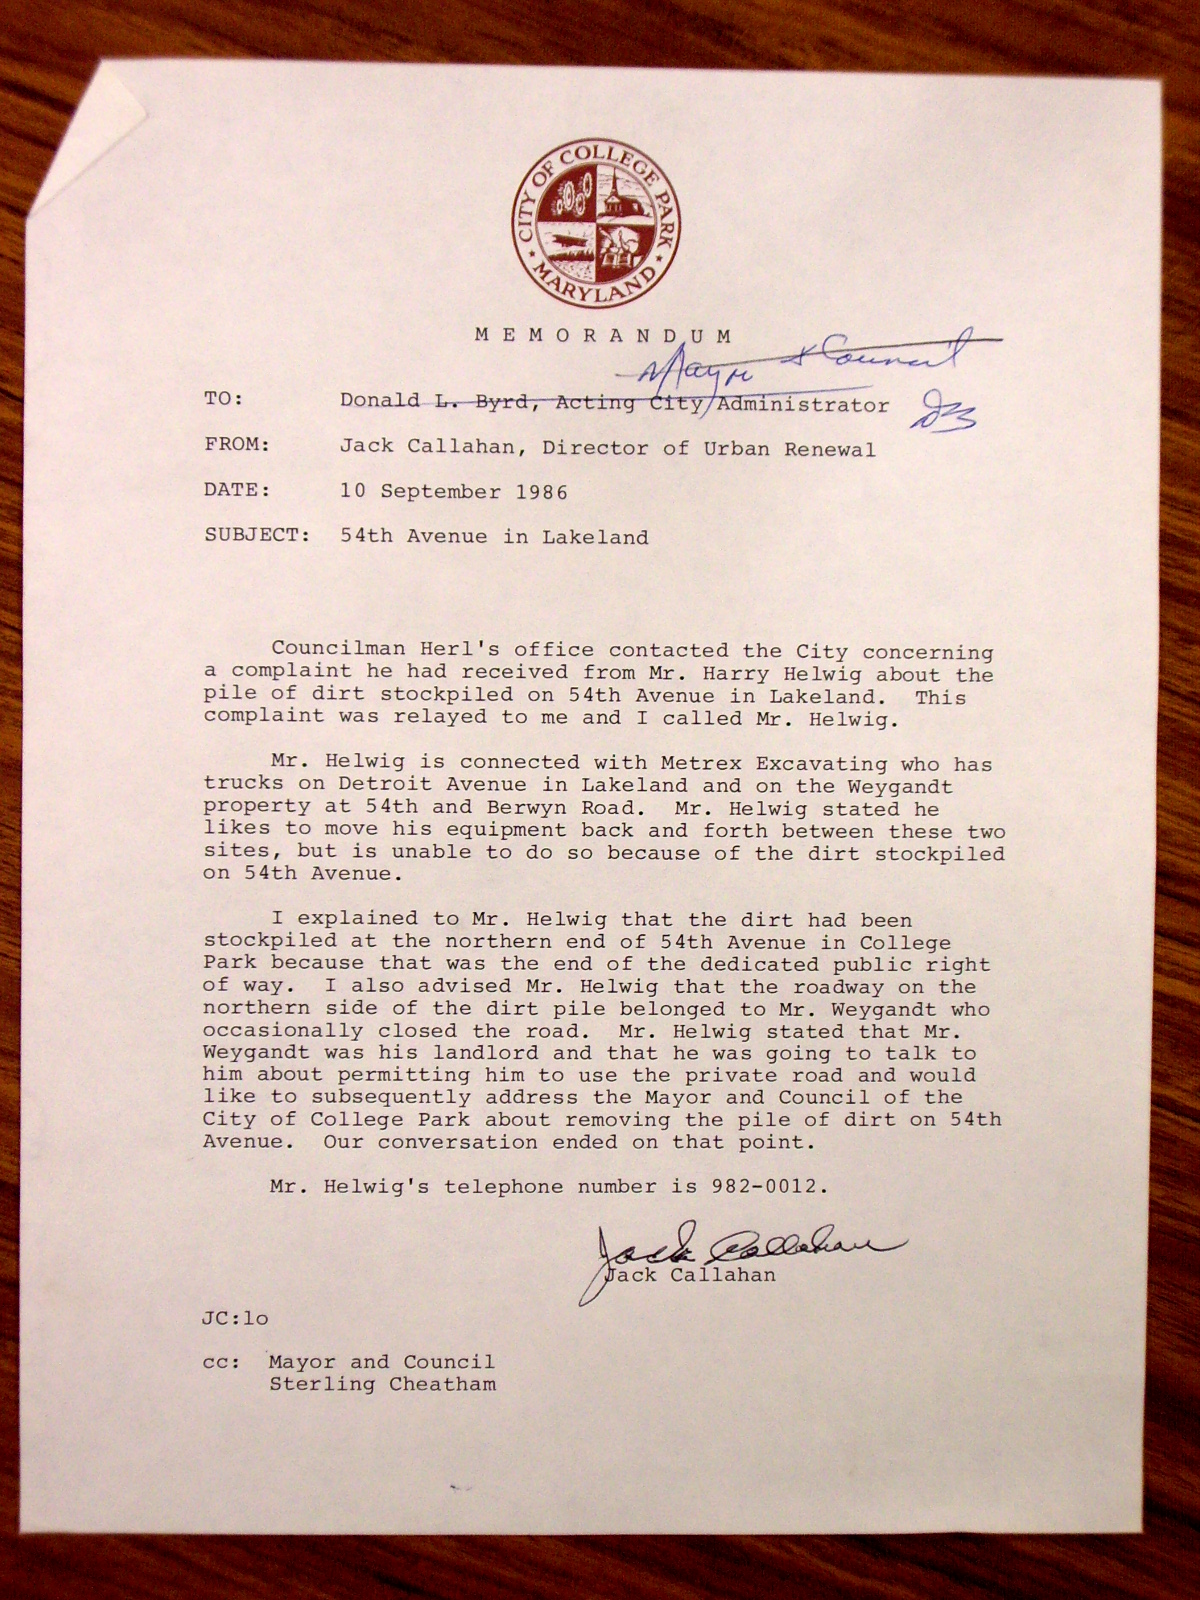 Memorandum to Donald Byrd from Jack Callahan